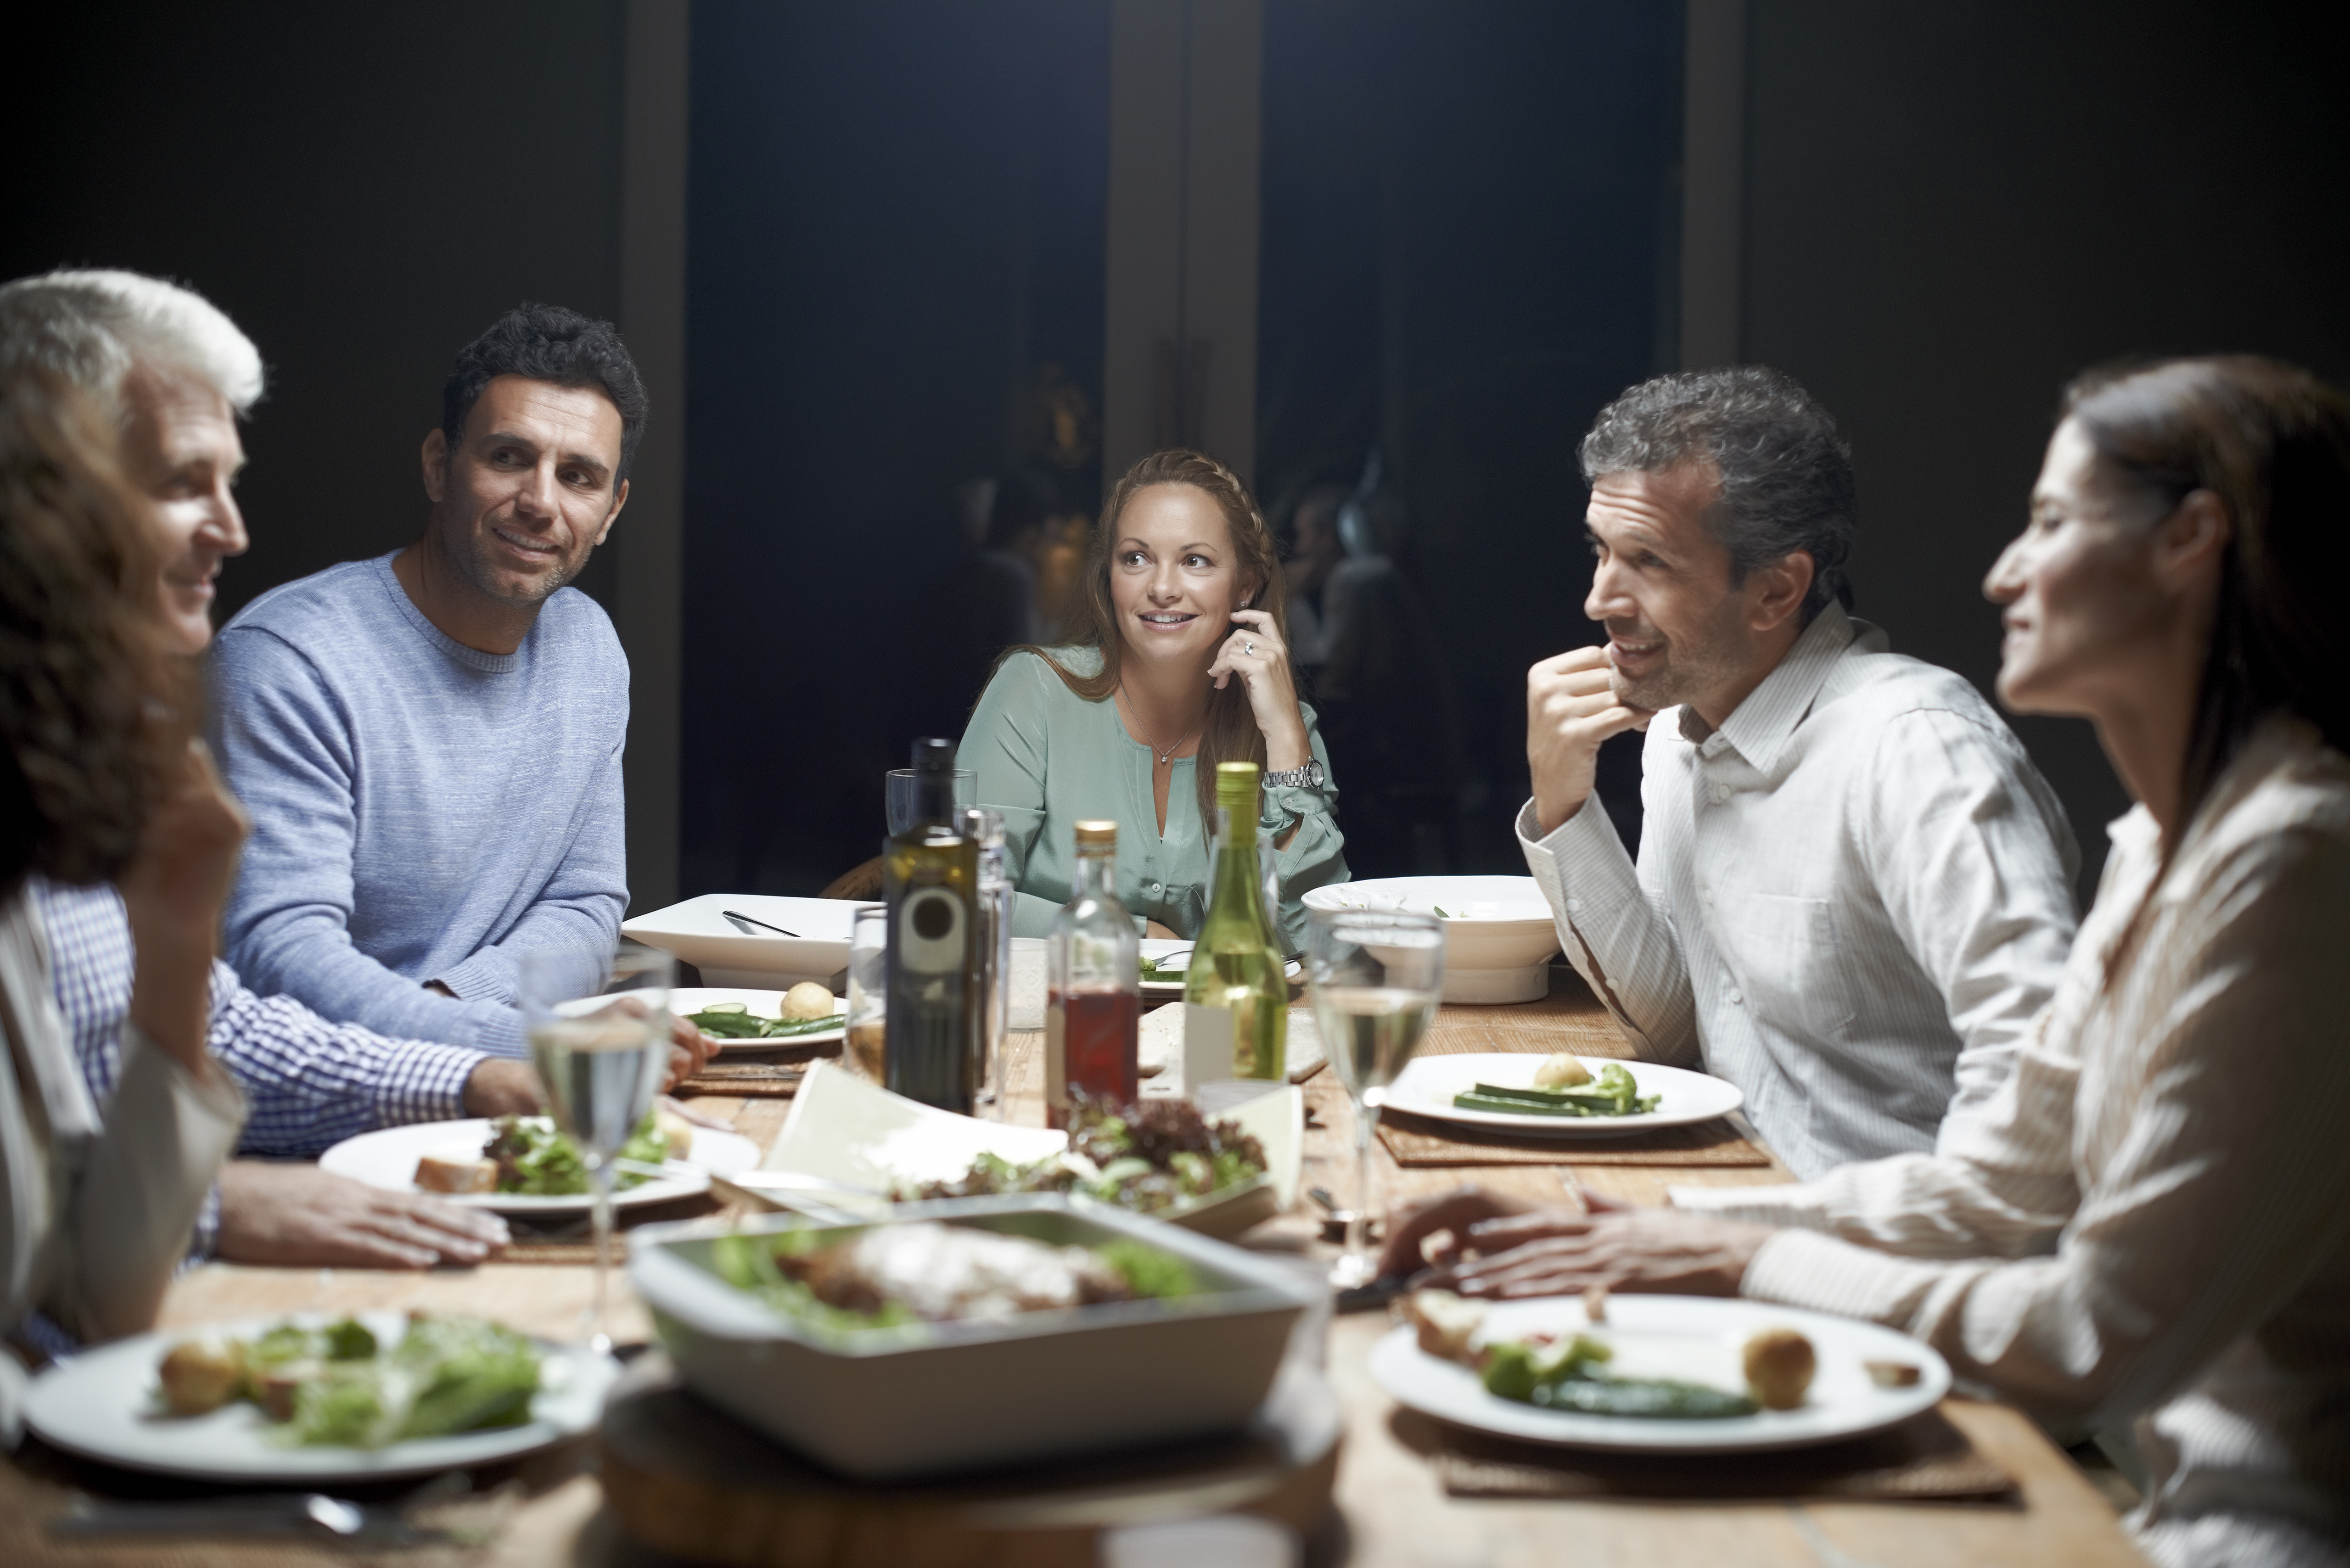 Des amis communiquent tout en dînant à table | Source : Getty Images